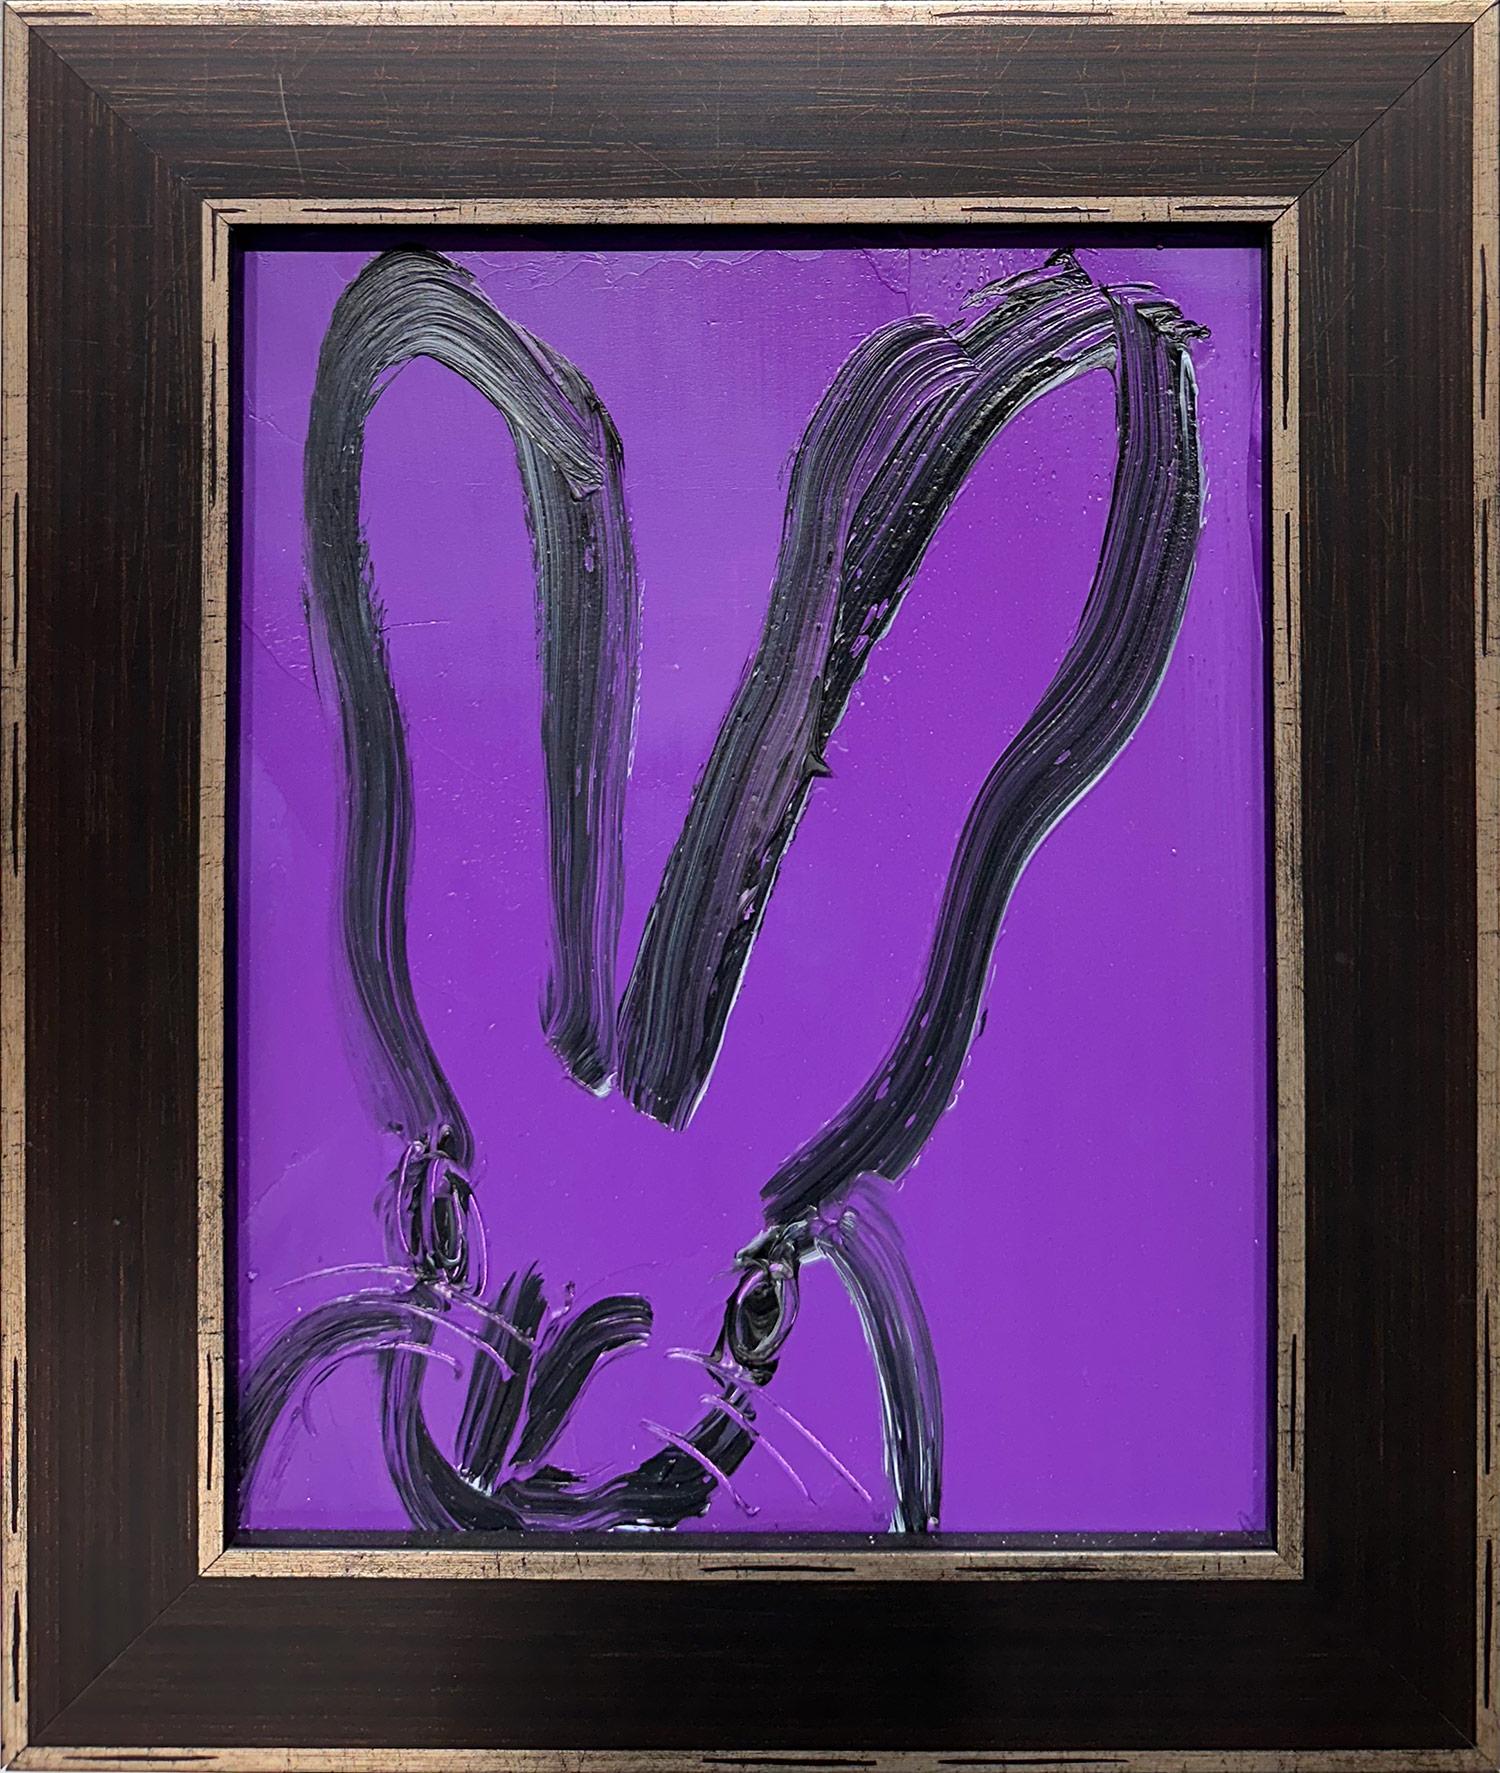 Hunt Slonem Abstract Painting - "Purple Mist" Black Bunny on Purple Background Oil Painting on Wood Panel